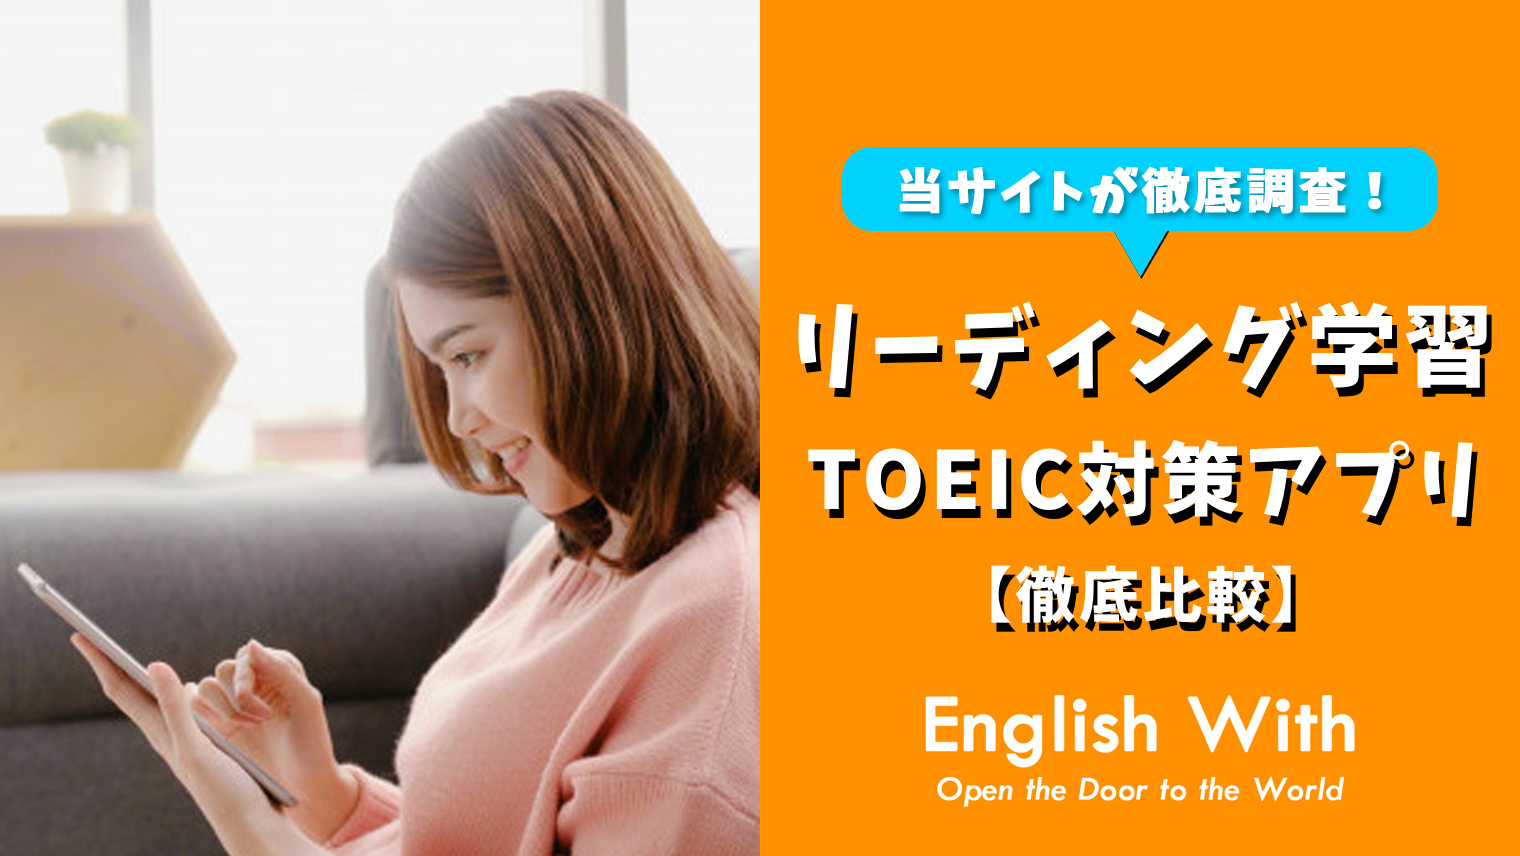 Toeicリーディング対策に使える英語学習アプリを紹介 5選 おすすめ英会話 英語学習の比較 ランキング English With